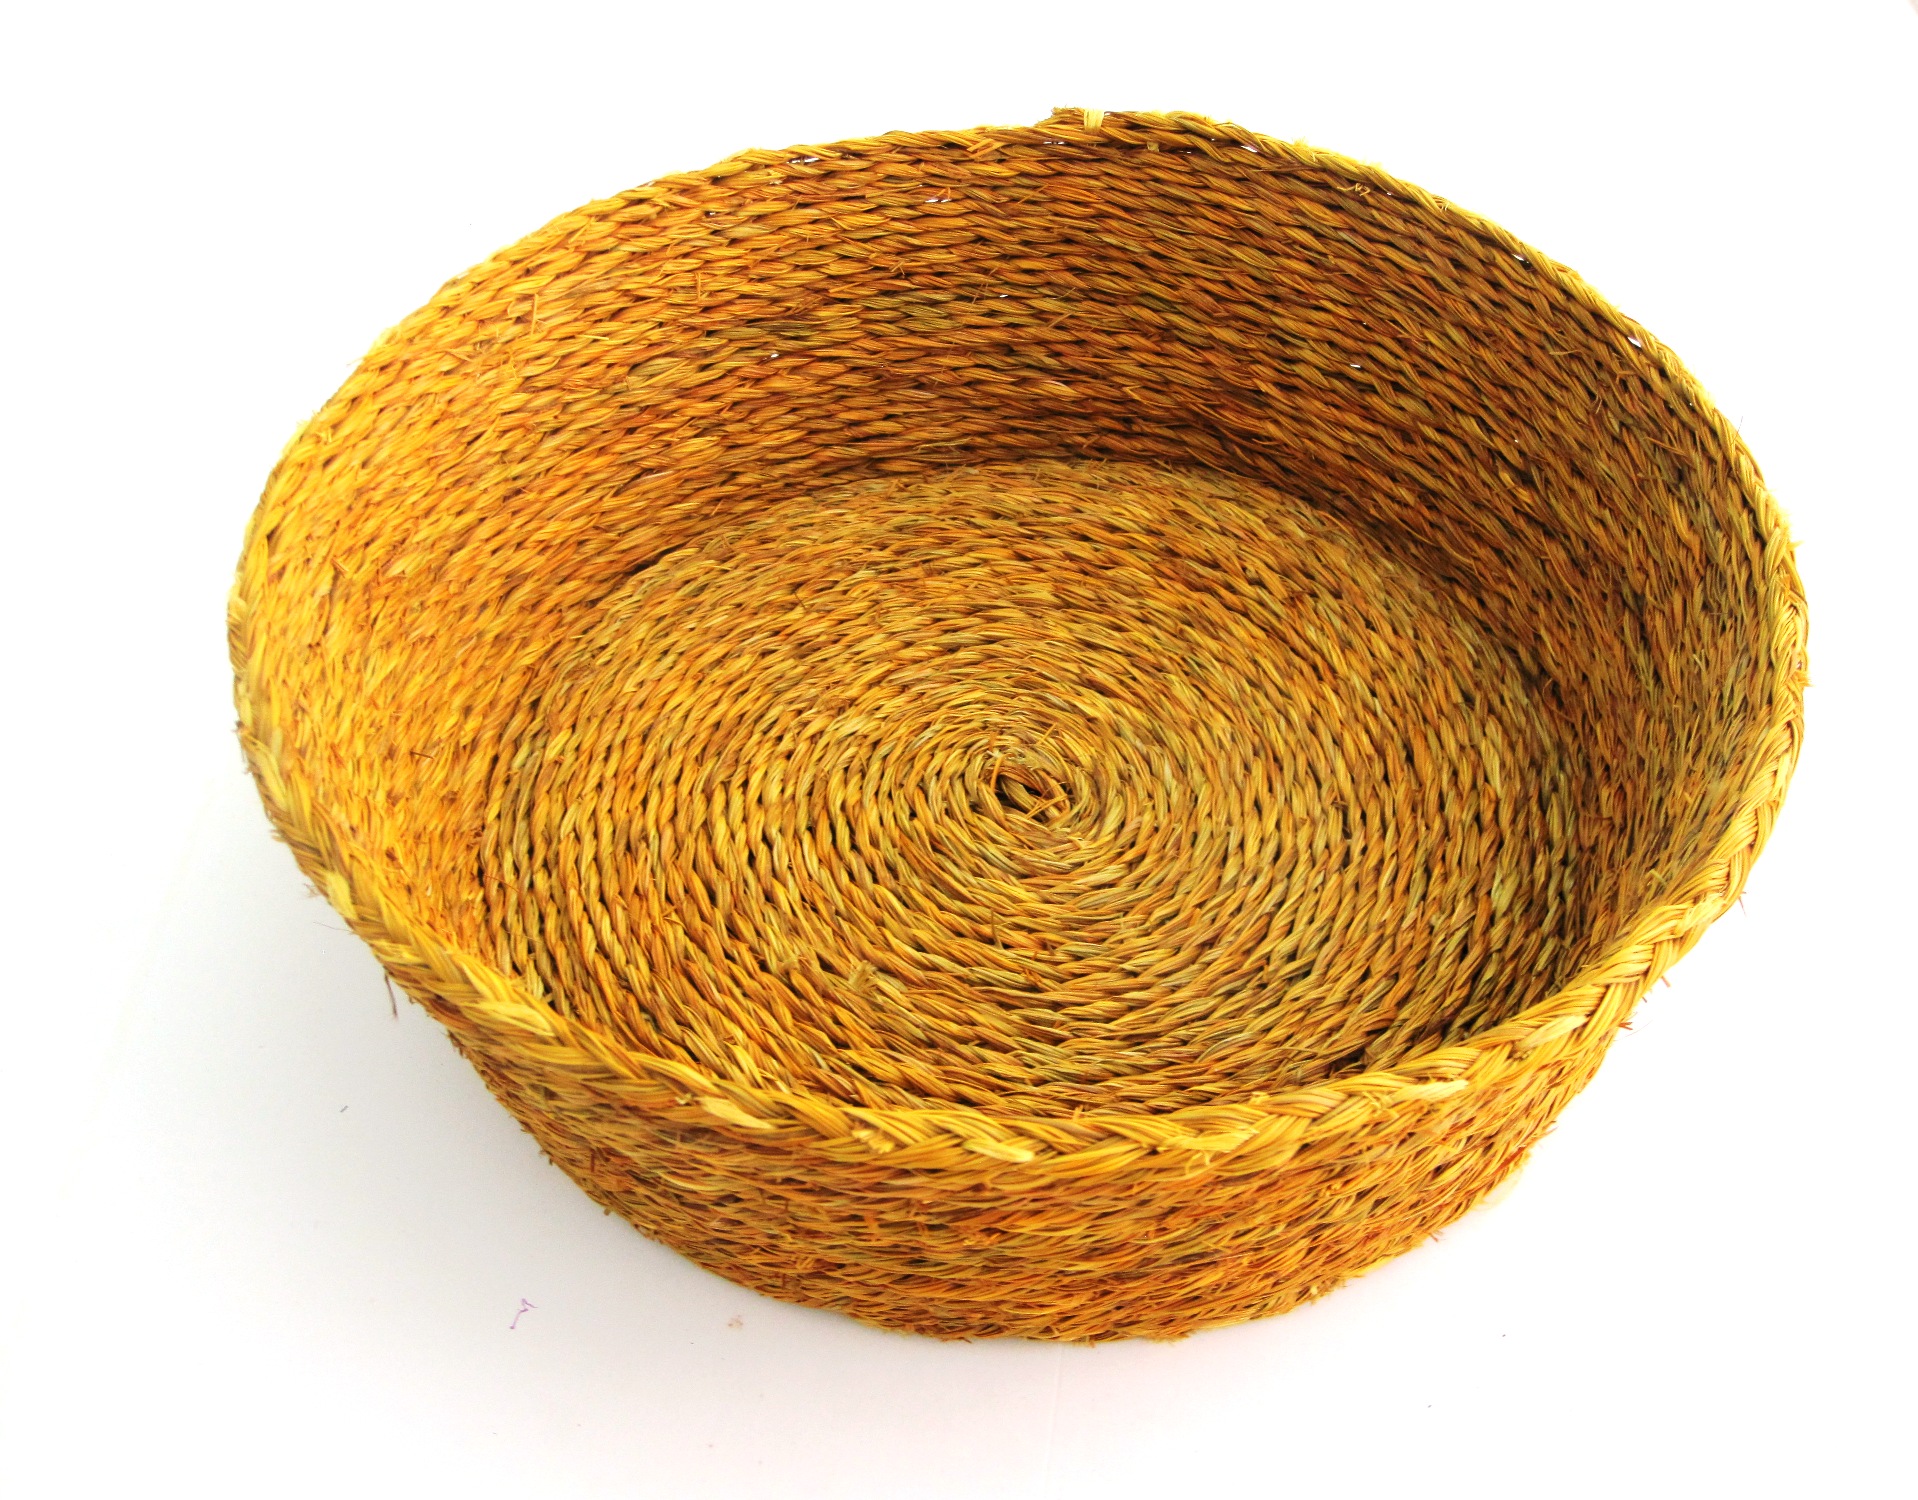 Round Bread Basket - Mustard